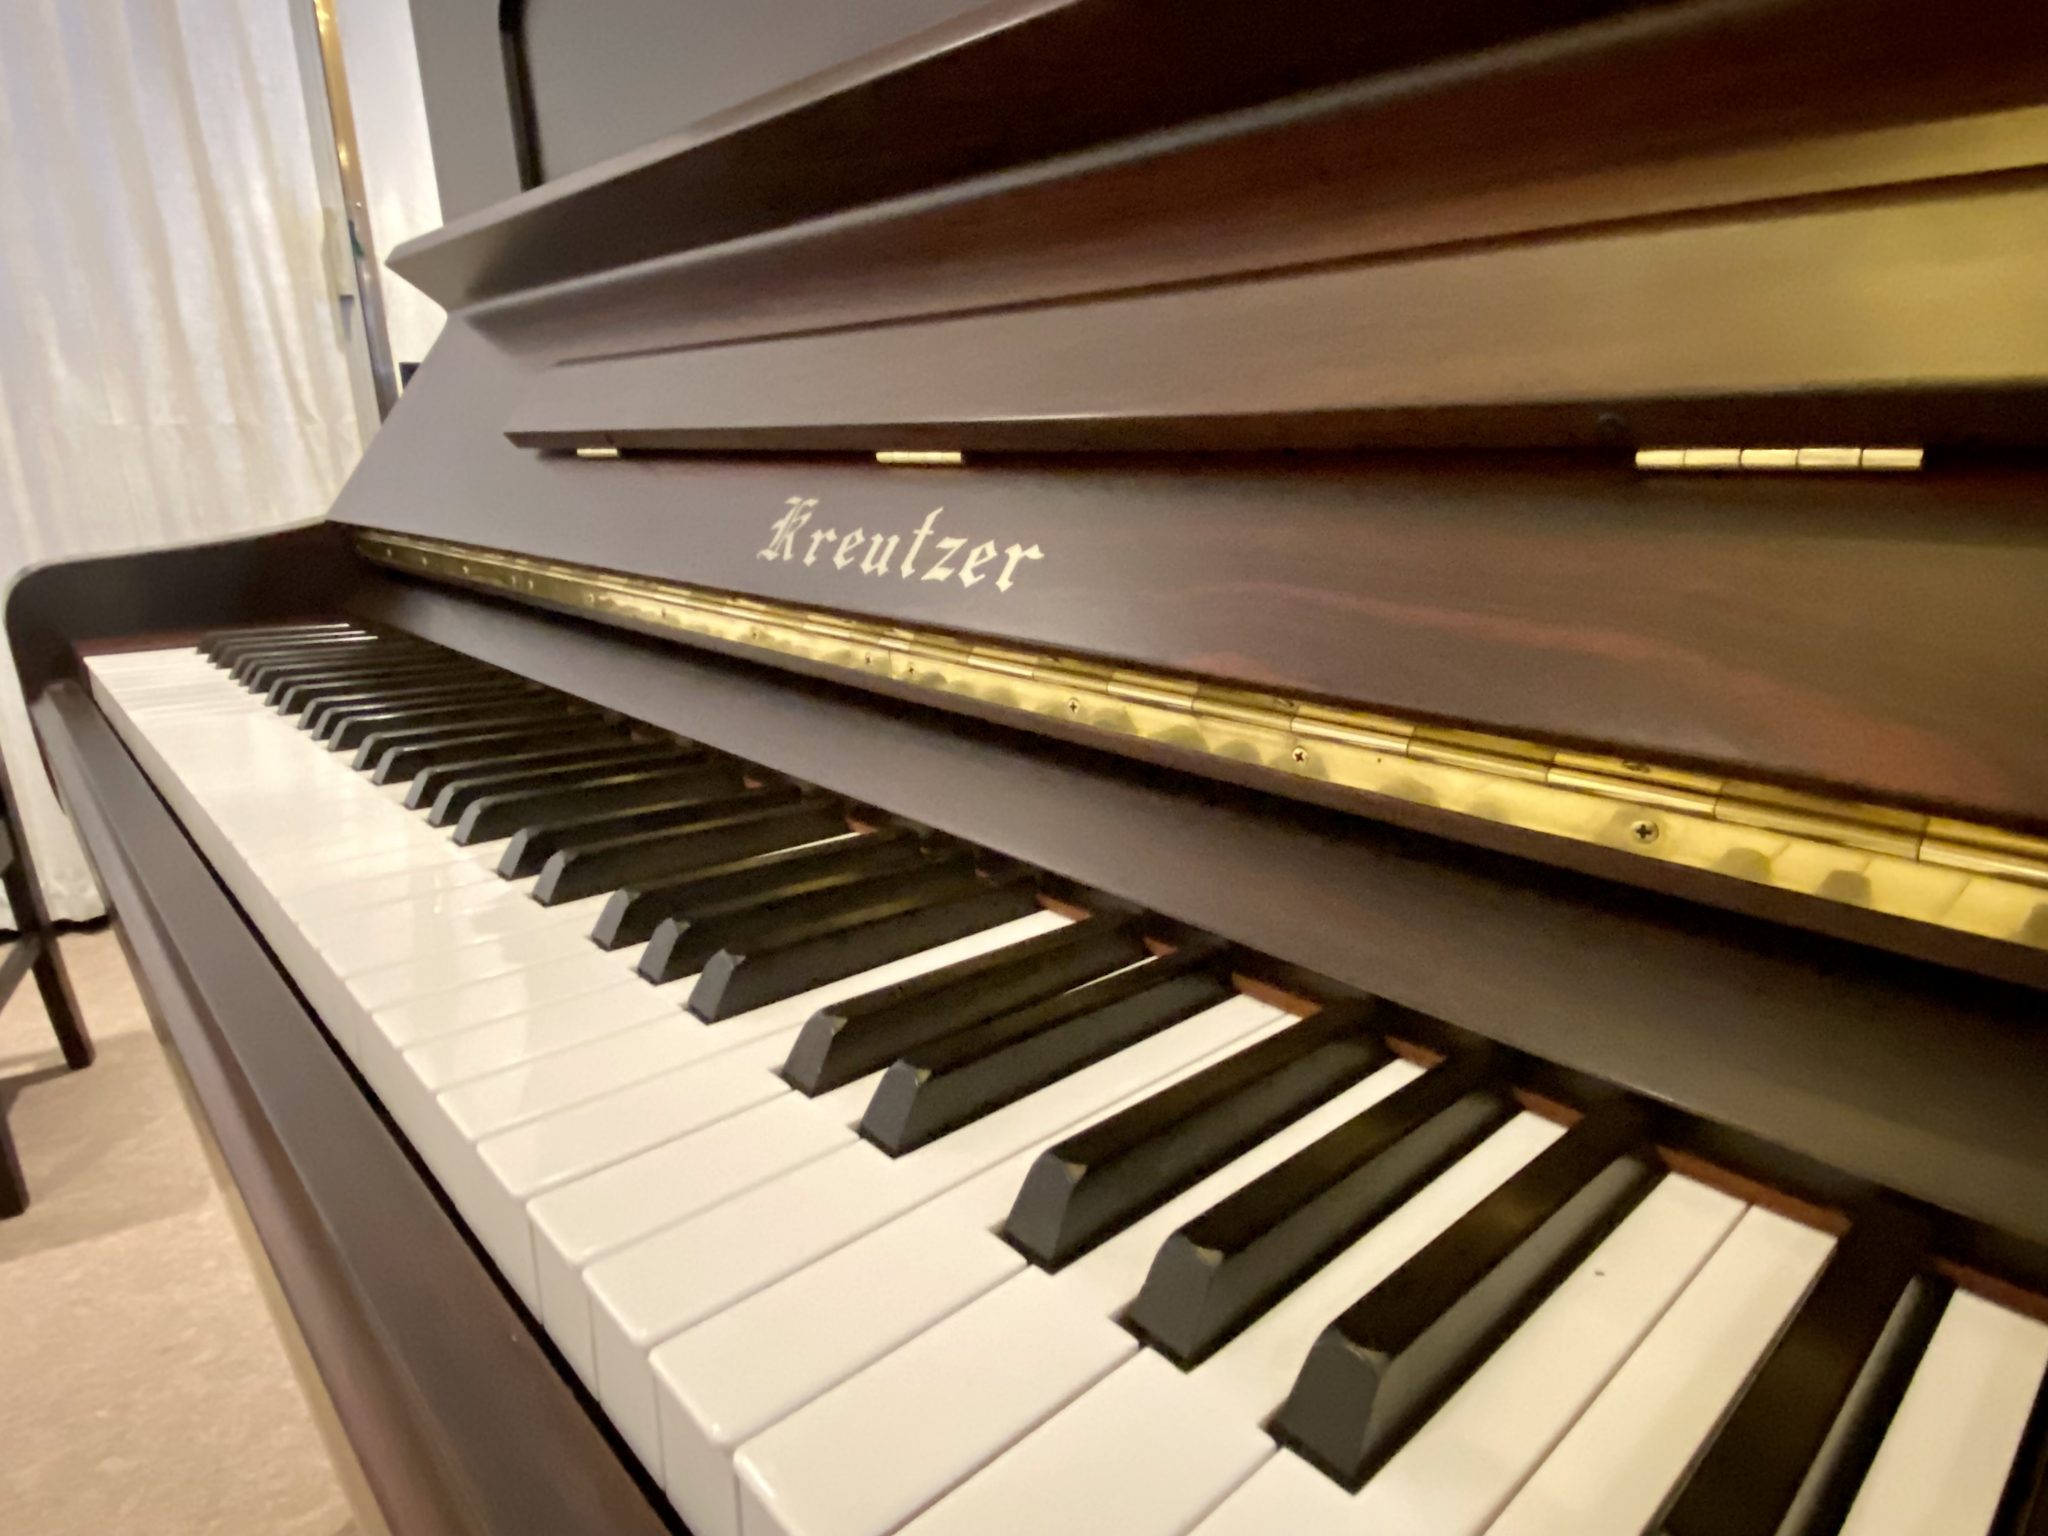 アップライトピアノ クロイツェル製 - 鍵盤楽器、ピアノ